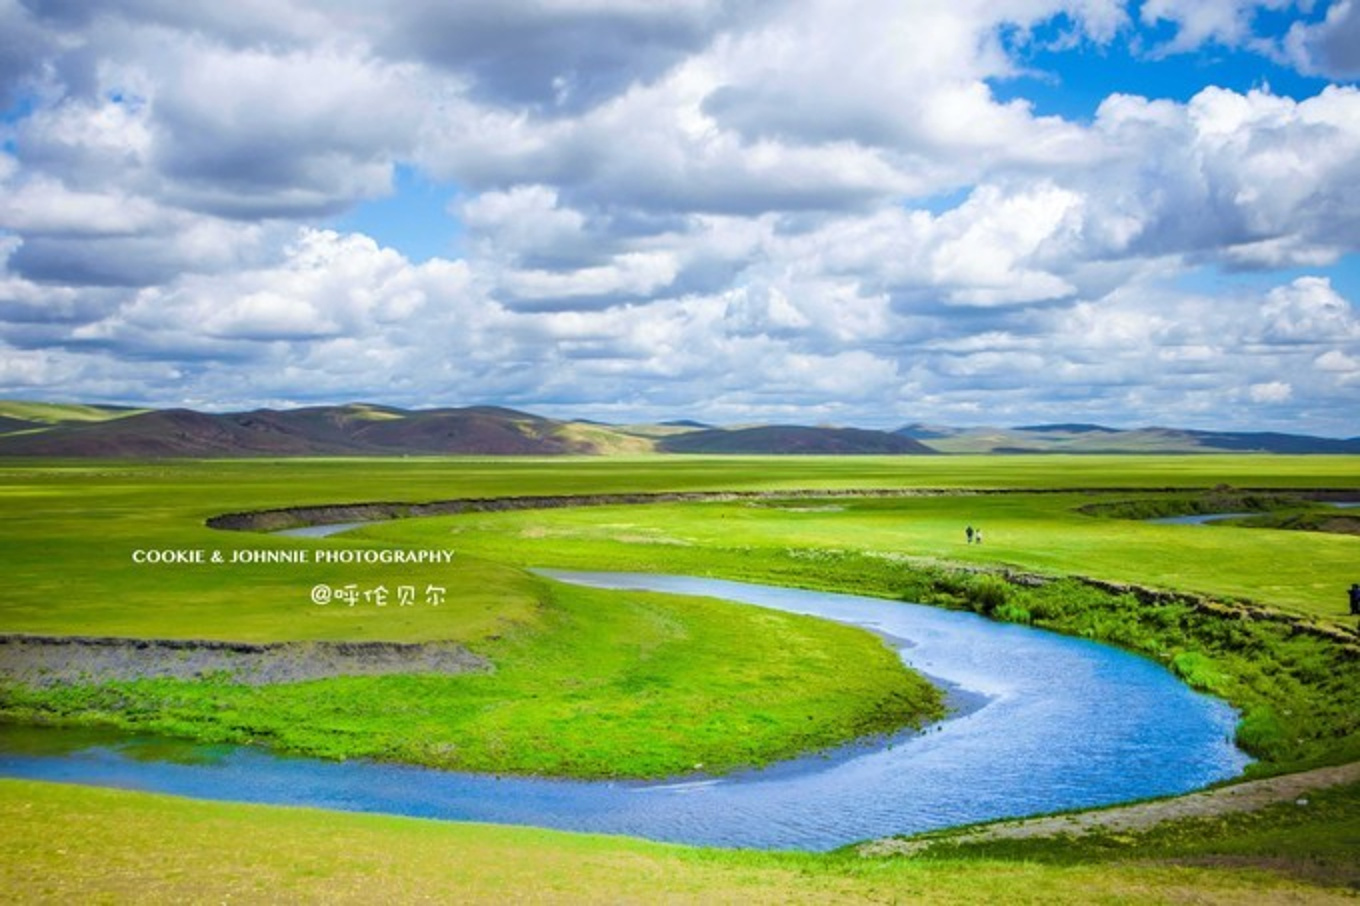 【携程攻略】内蒙古呼伦贝尔大草原景点,对于一个南方 从小生活在钢筋混泥土中小姑娘来说 这里真的太美了